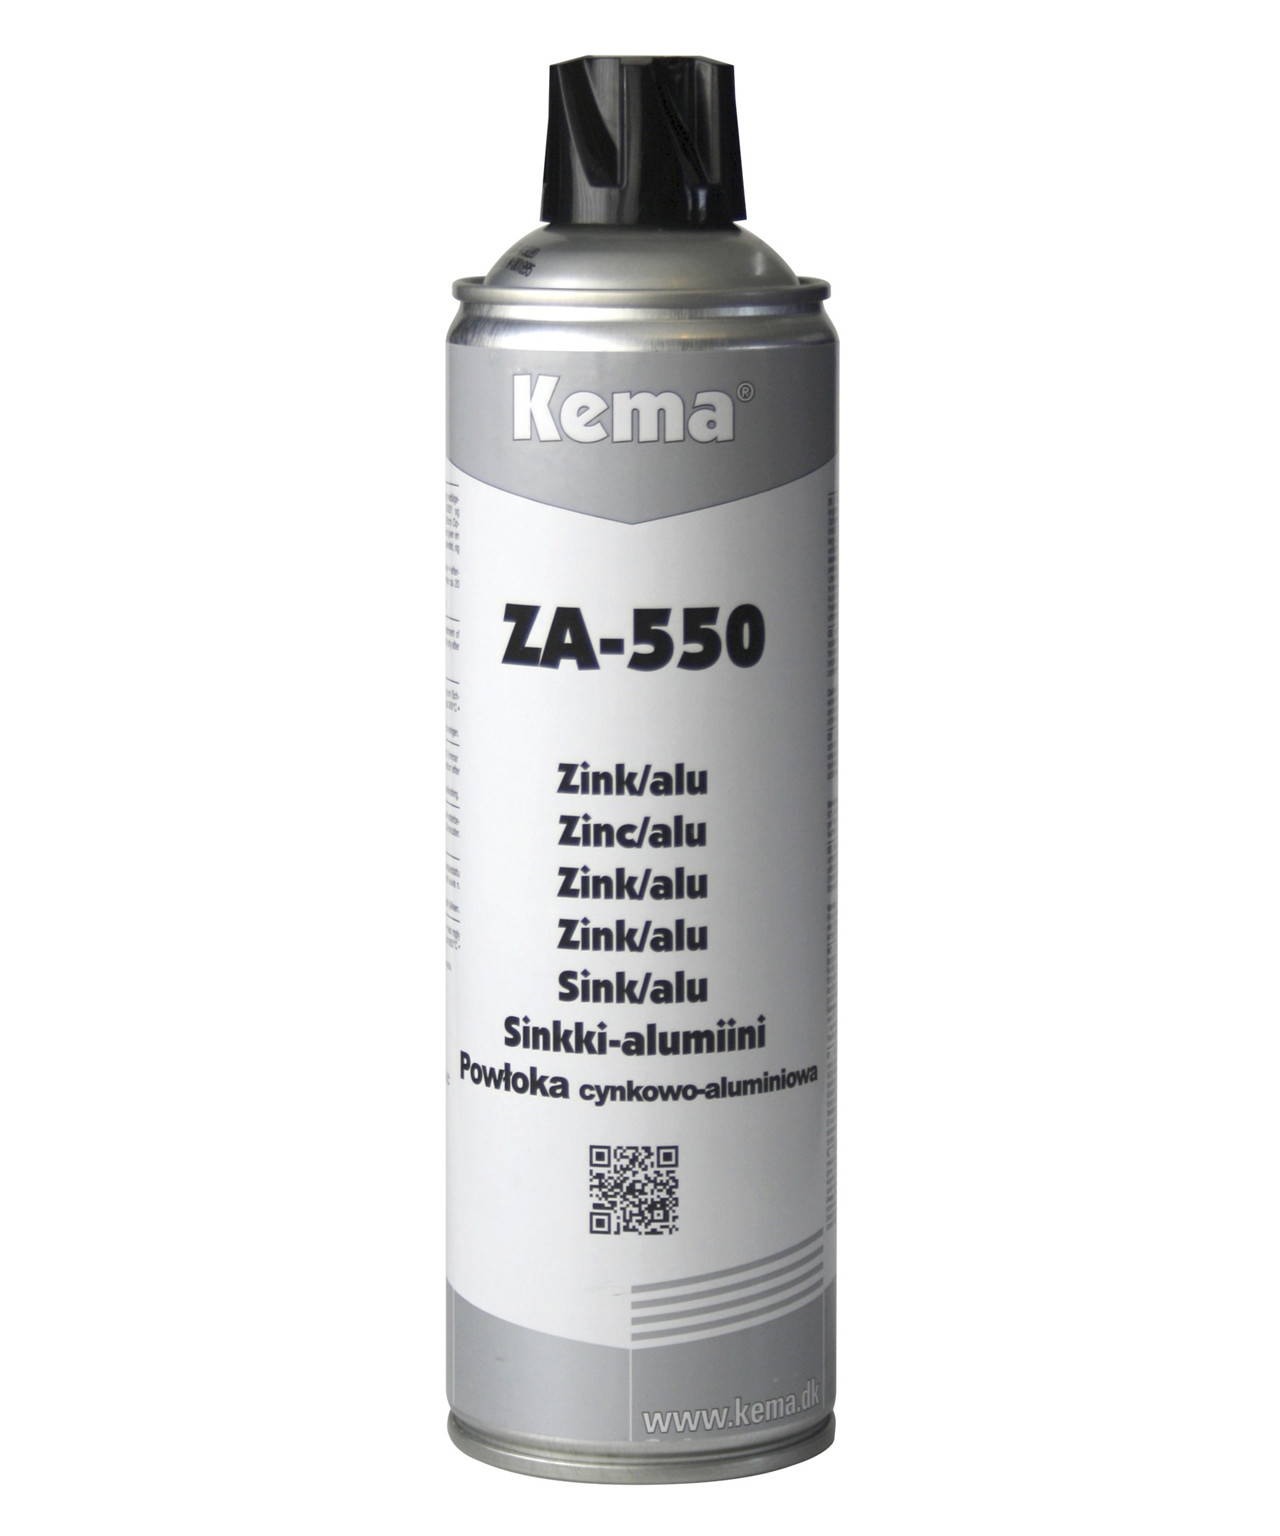 Billede af Kema zink-alu spray ZA-550 hos Specialbutikken